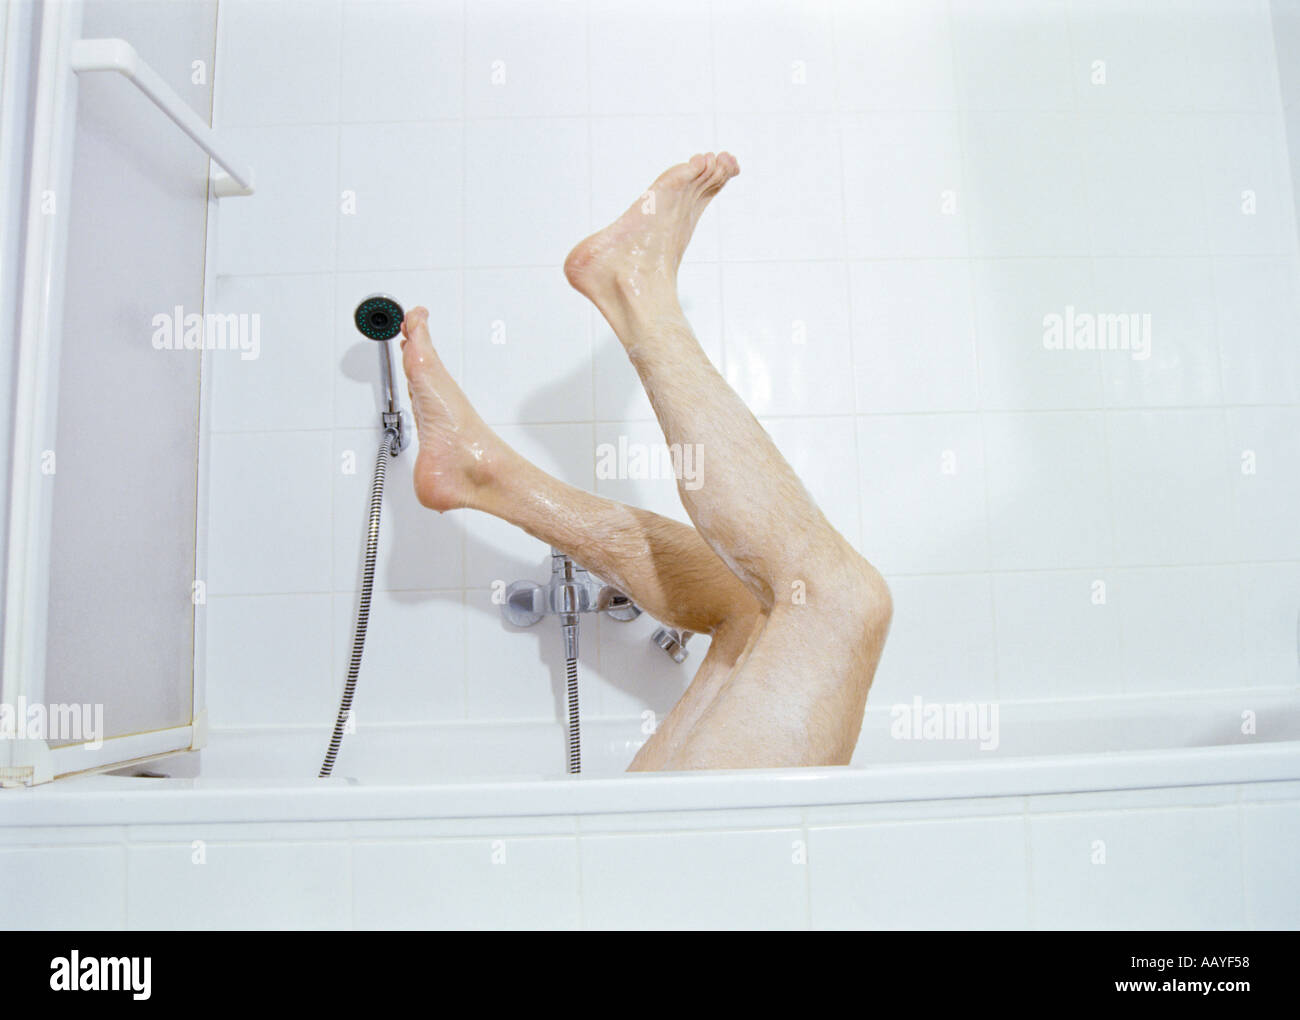 S'homme jambes poilues qui sort d'une baignoire Banque D'Images